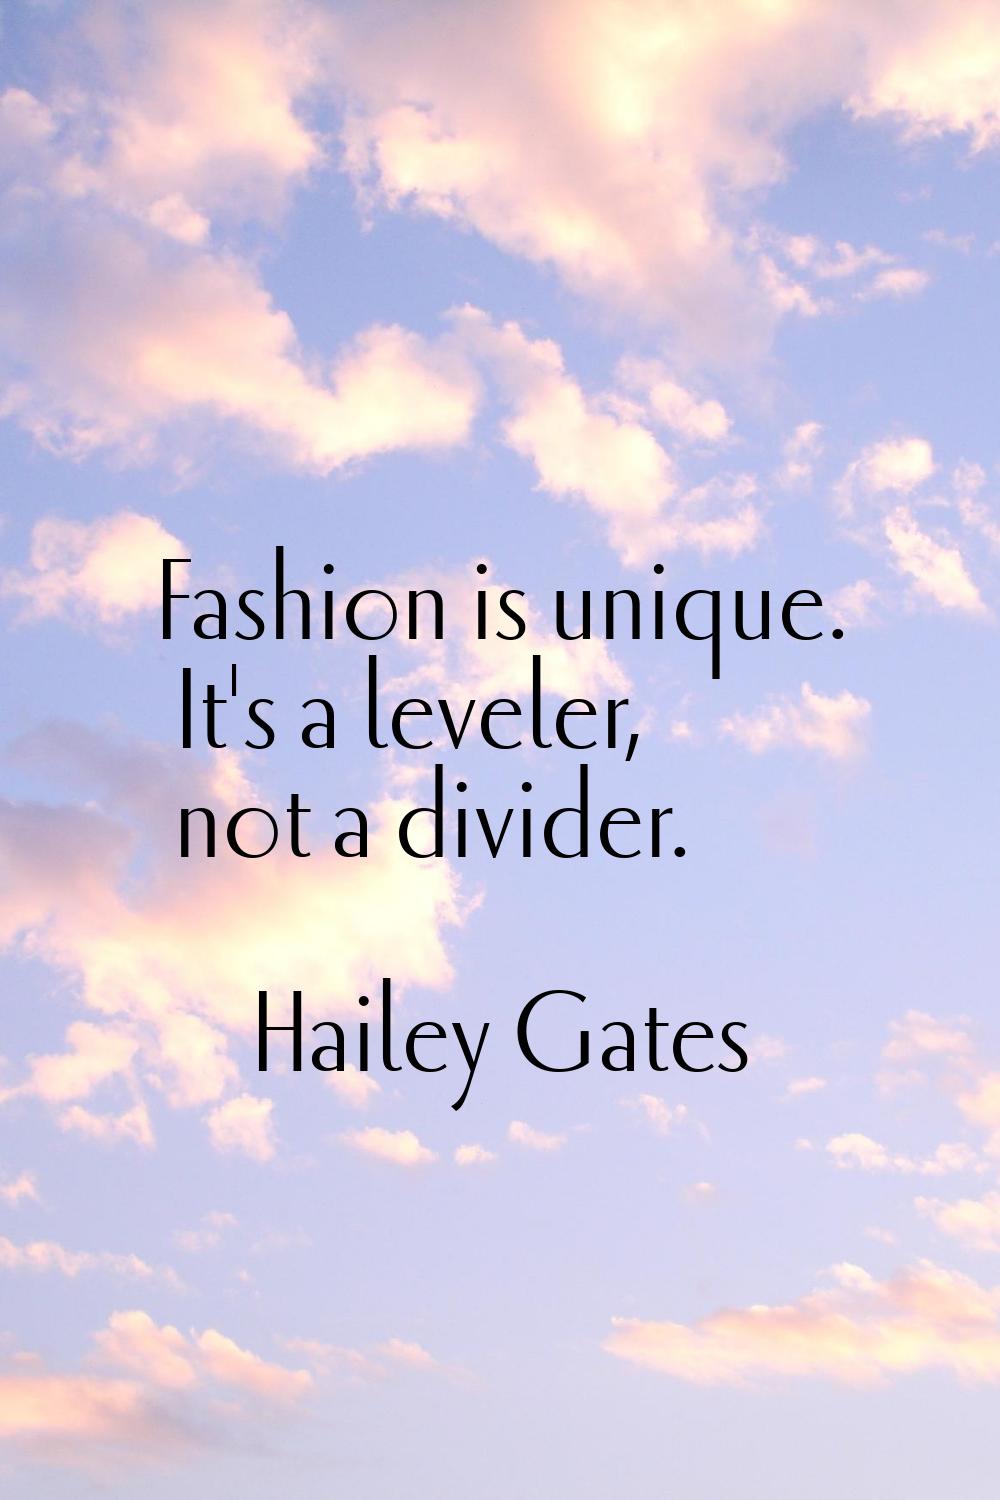 Fashion is unique. It's a leveler, not a divider.